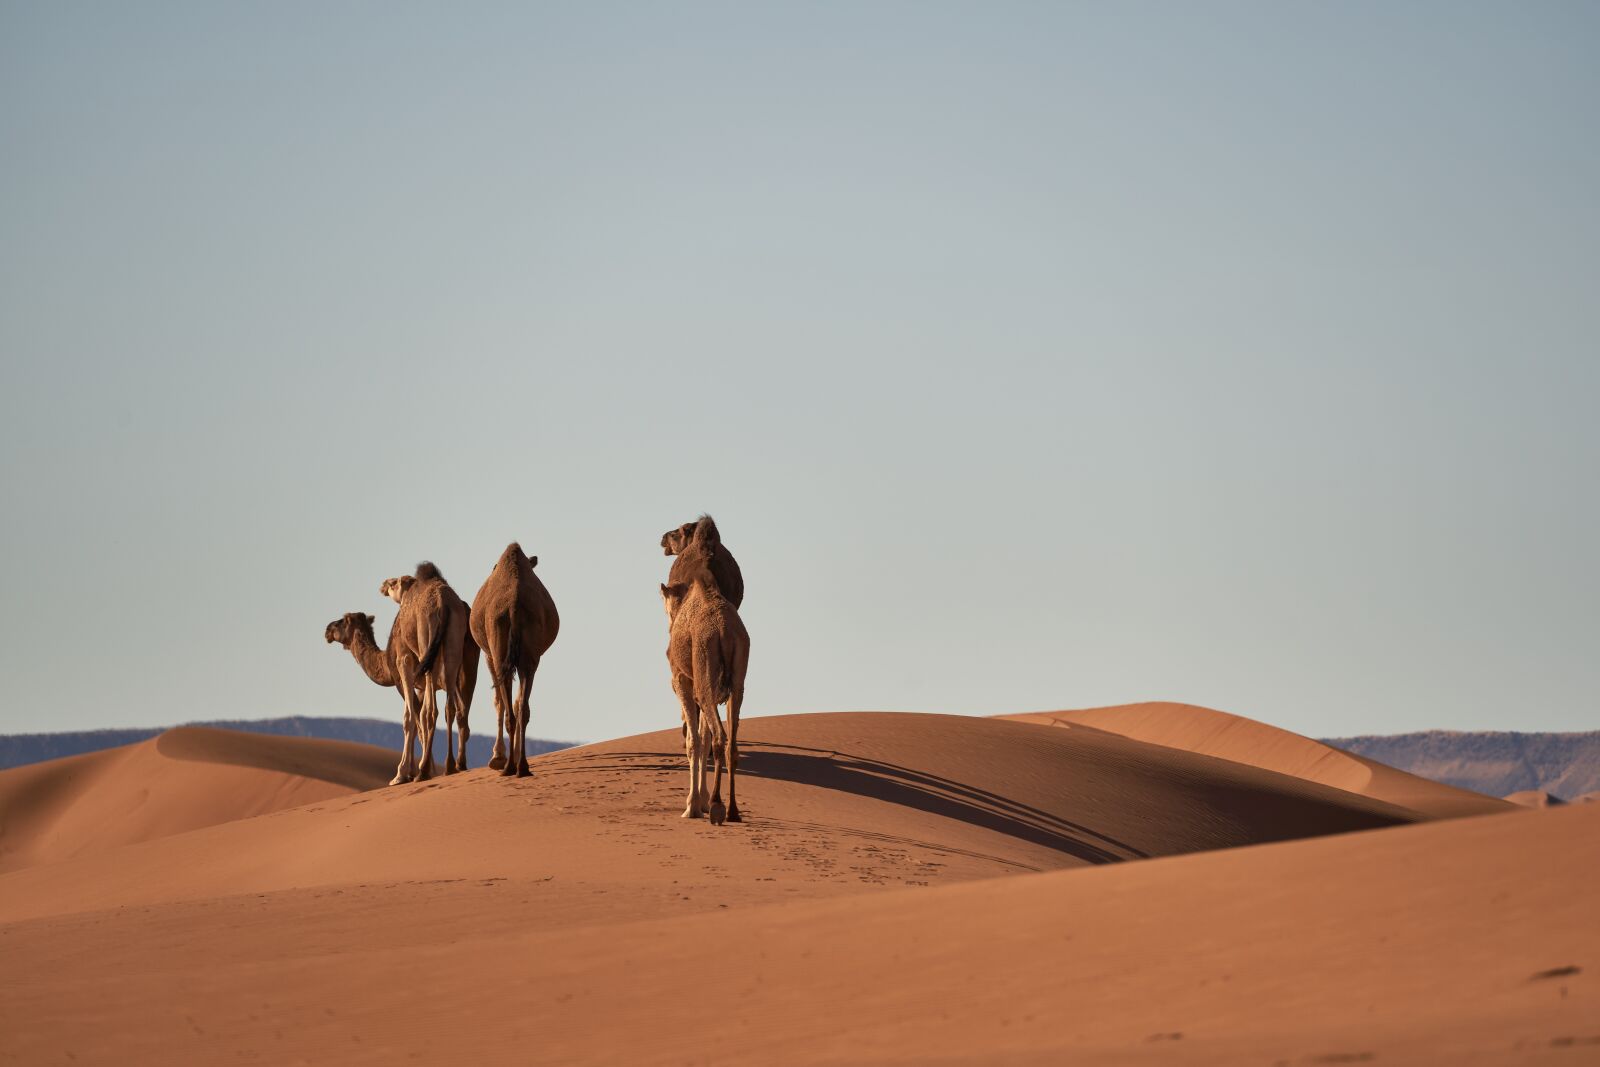 Sony FE 70-300mm F4.5-5.6 G OSS sample photo. Desert, sahara, camels photography